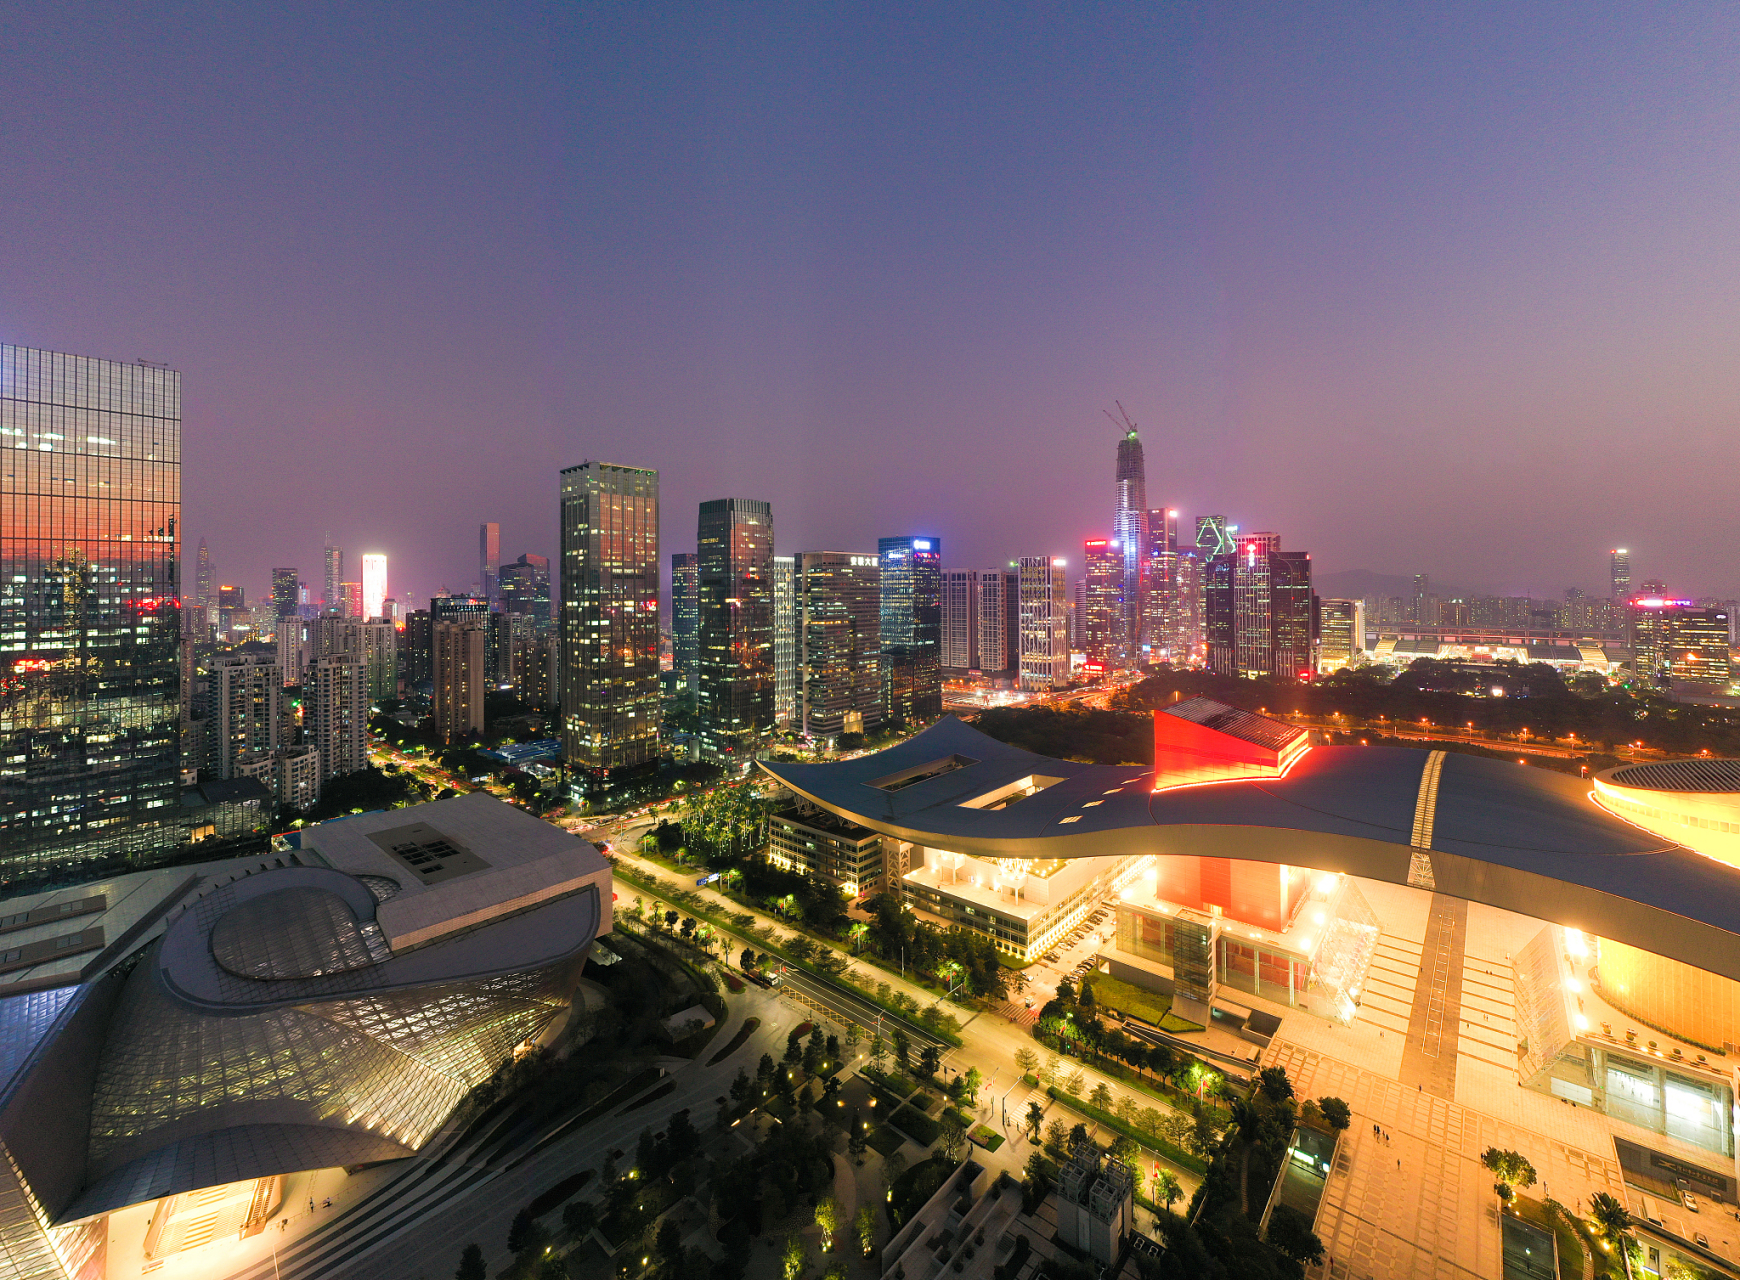 深圳最美的夜景有哪些?以下是三个值得推荐的景点!  1